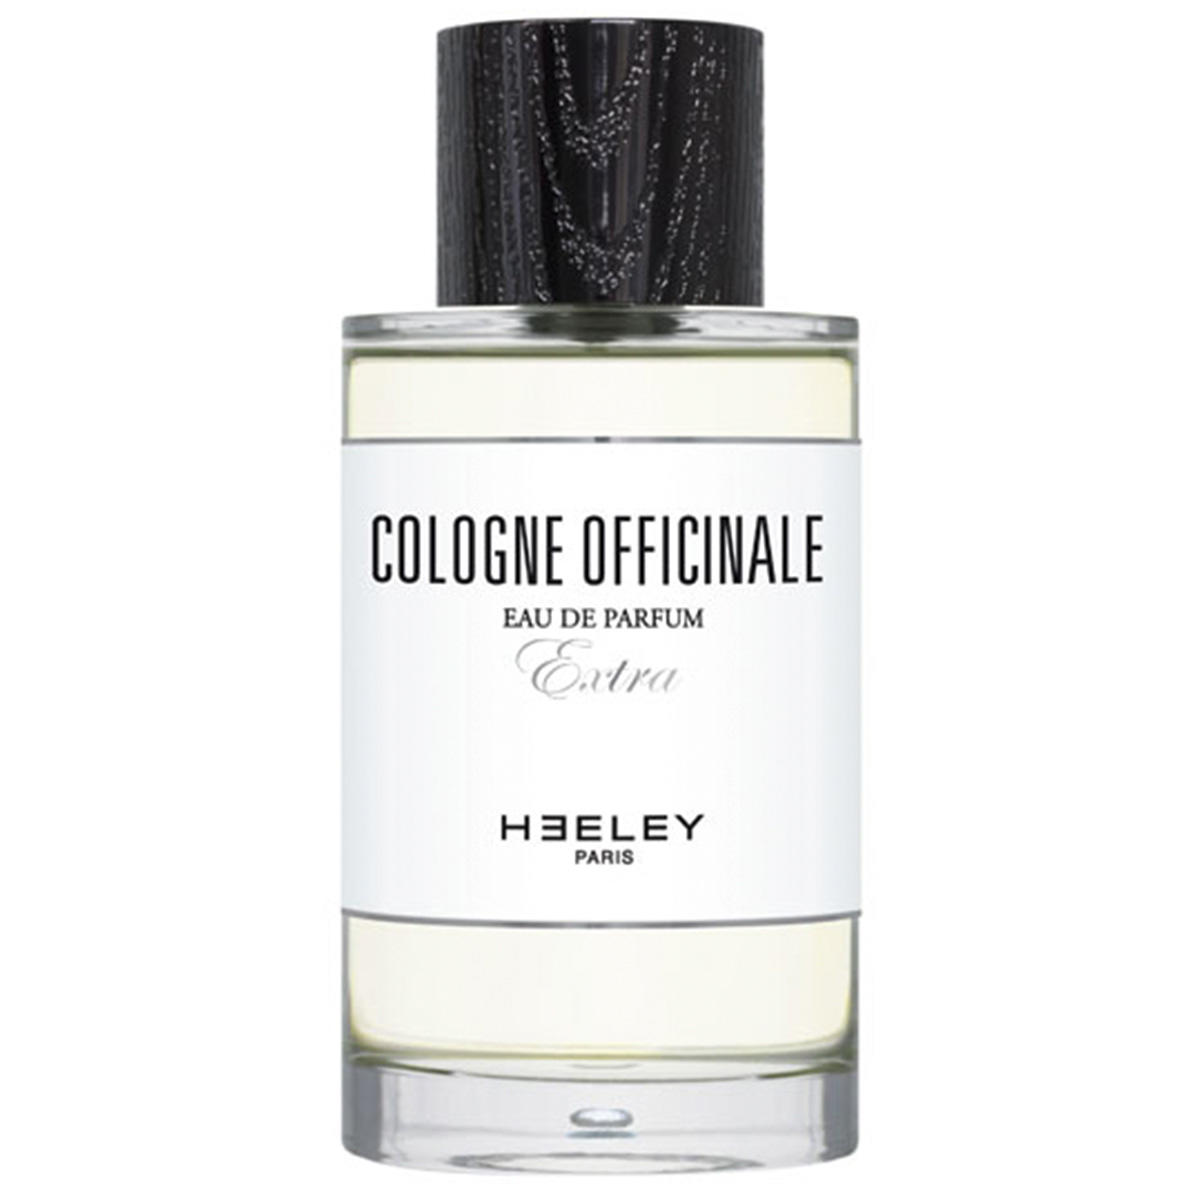 HEELEY Cologne Officinale Eau de Parfum 100 ml